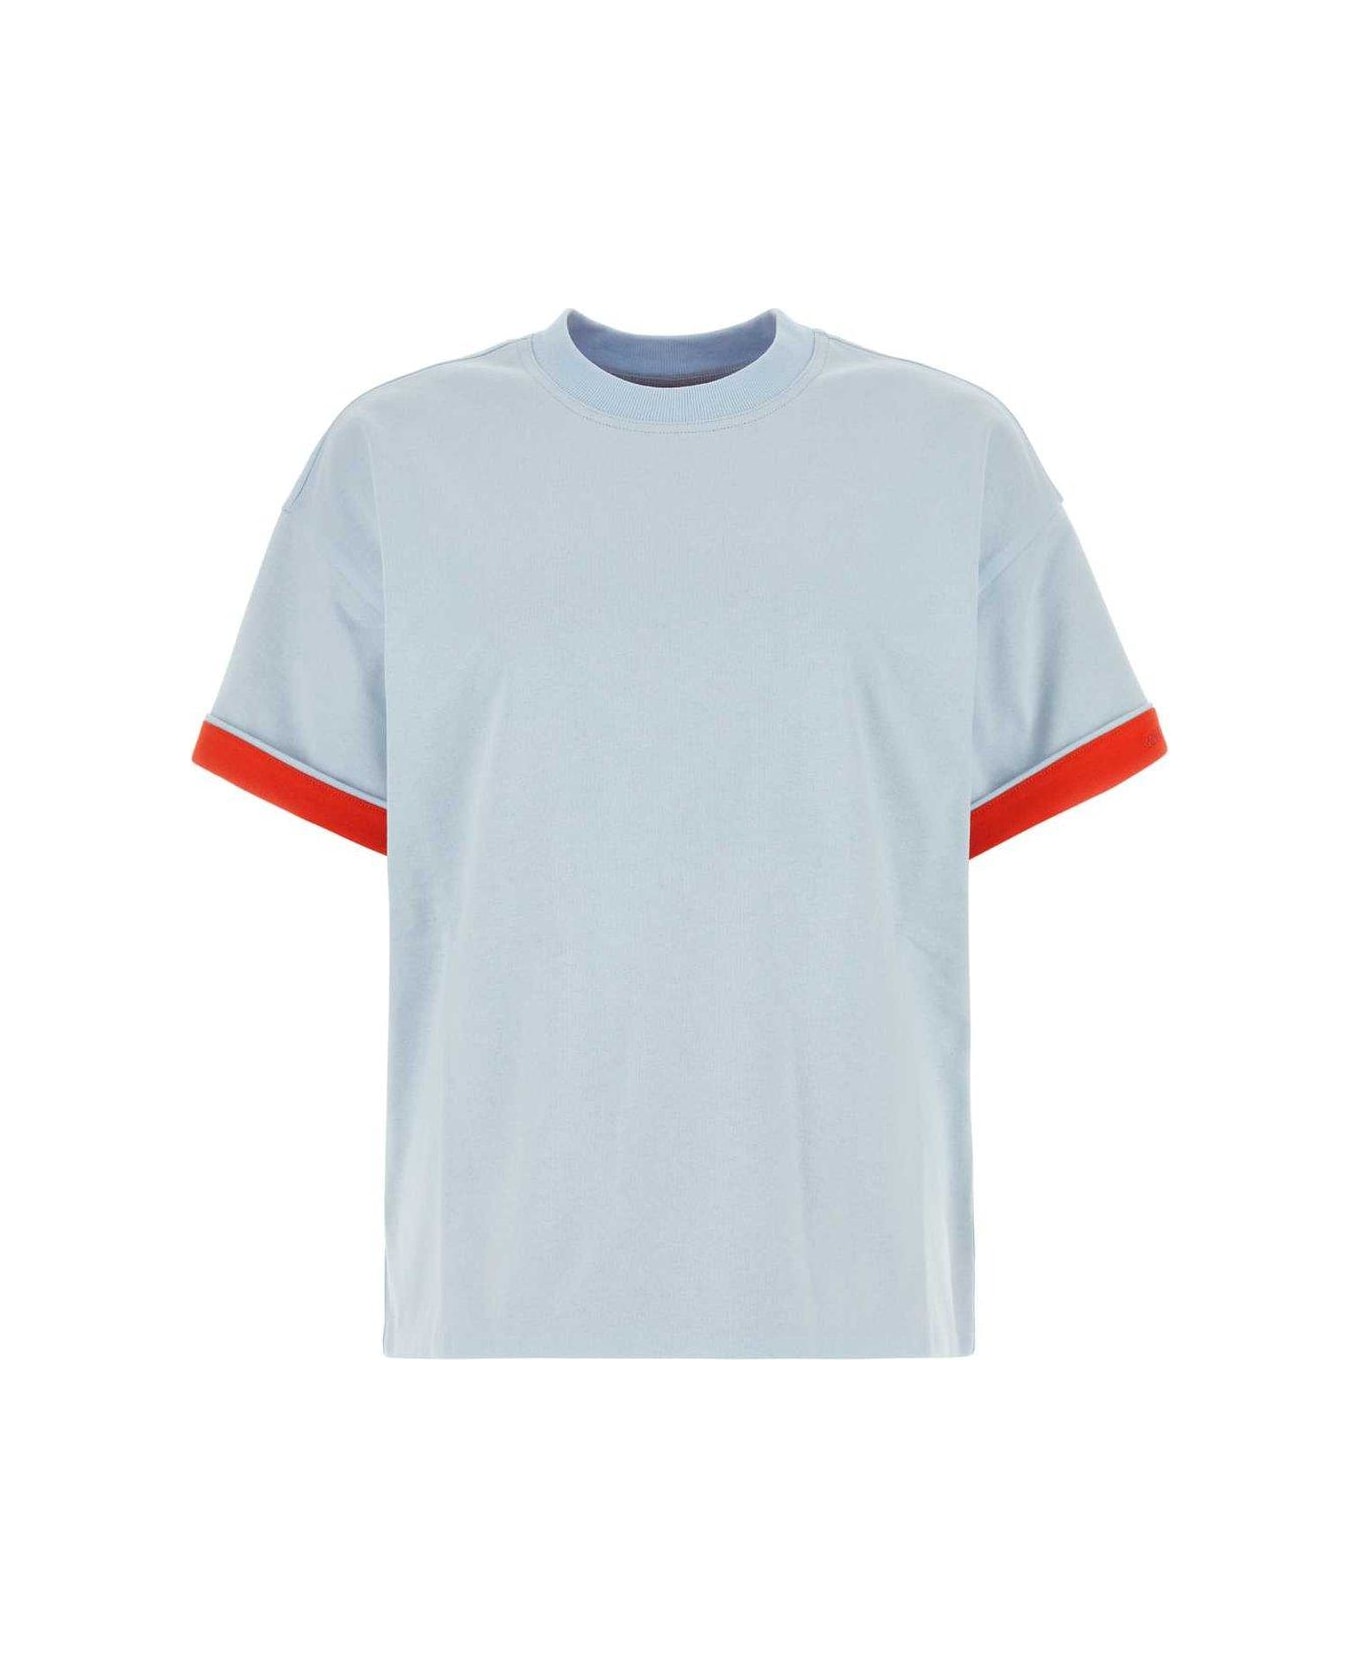 Bottega Veneta Cotton T-shirt - Bubble/tulip Tシャツ